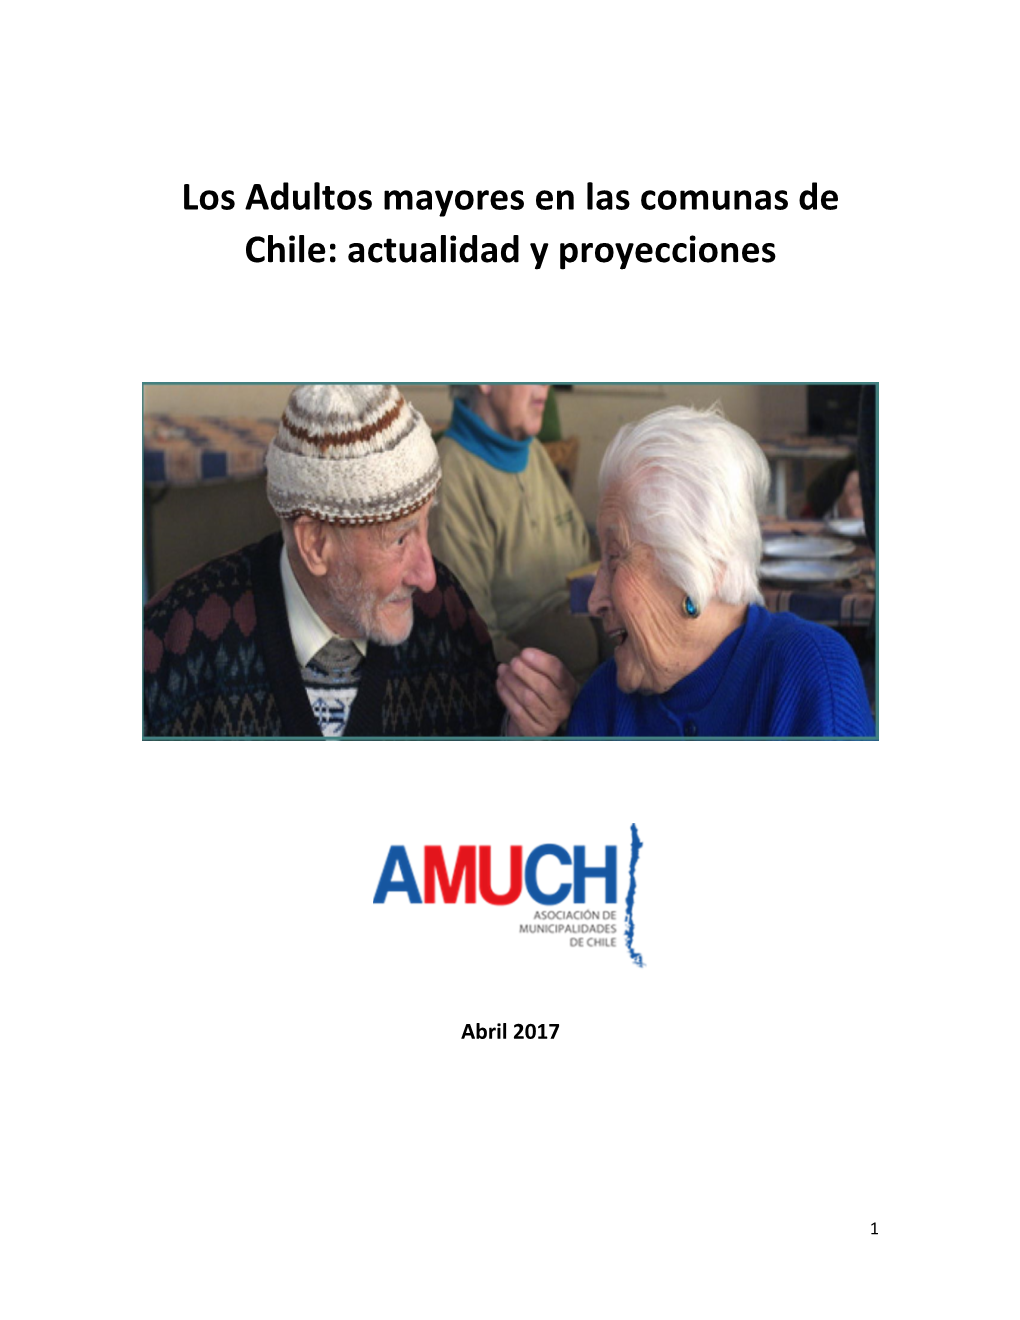 Los Adultos Mayores En Las Comunas De Chile: Actualidad Y Proyecciones